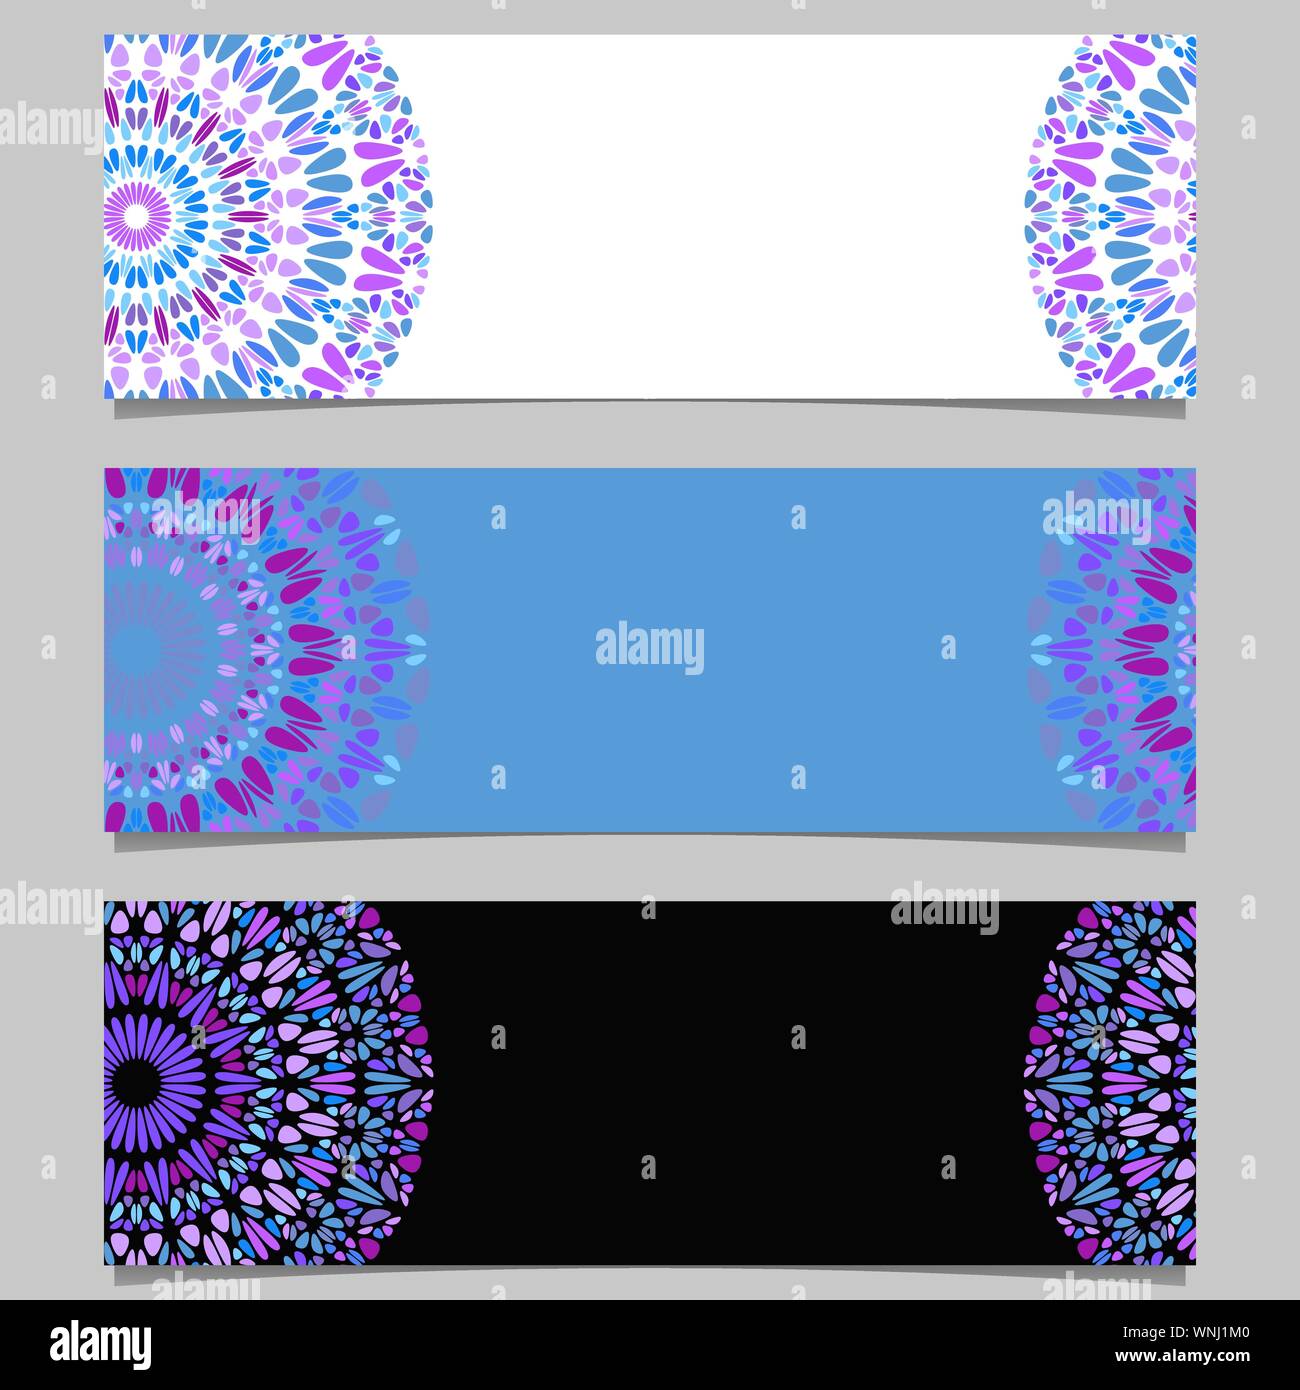 Geometrische Edelstein Mandala banner Vorlage festlegen - farbenfrohe abstrakte Vector Graphic Design mit geschwungenen Formen Stock Vektor